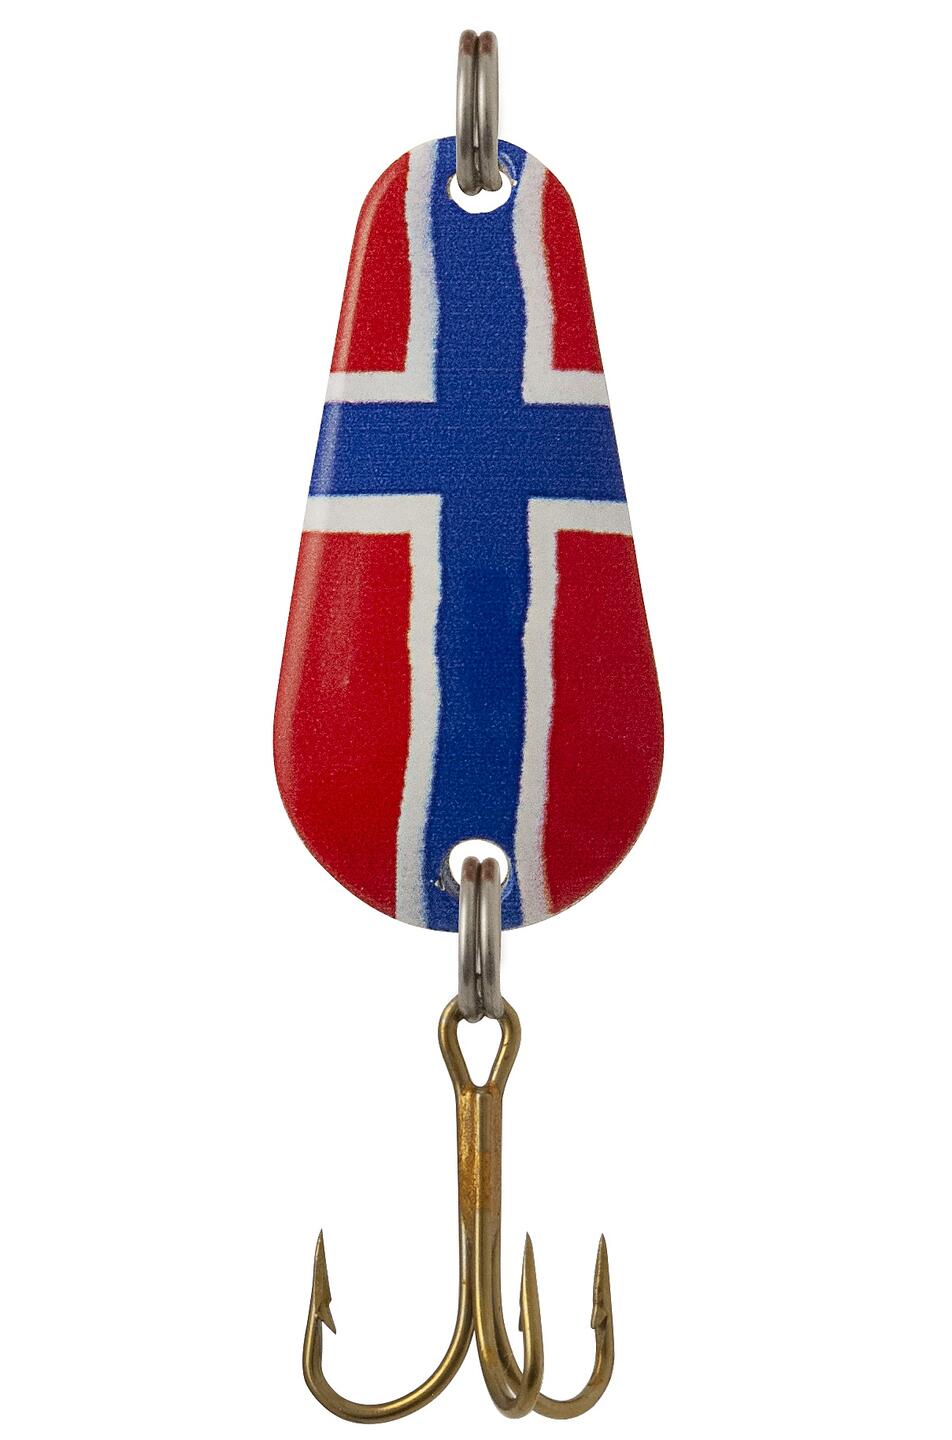 Sølvkroken Spesial Classic 12g Norges Flagg